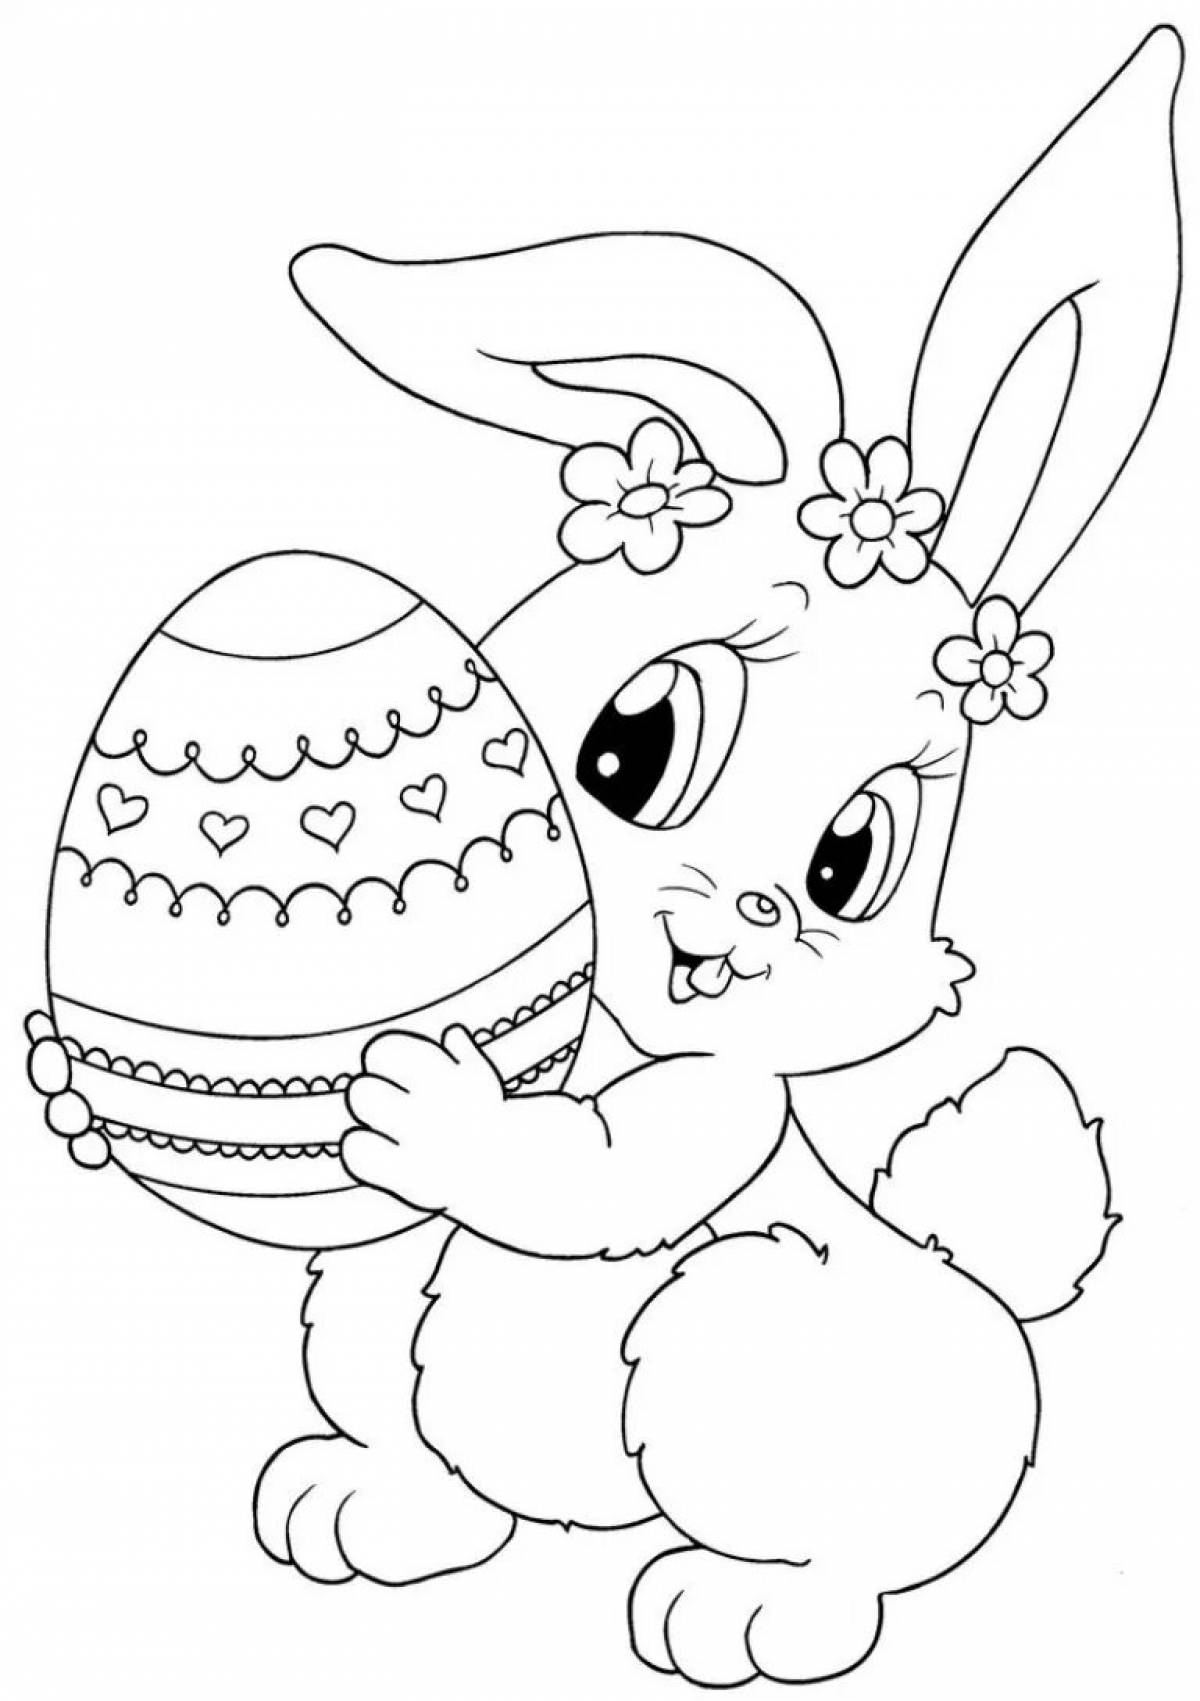 Великолепная раскраска кролики для девочек